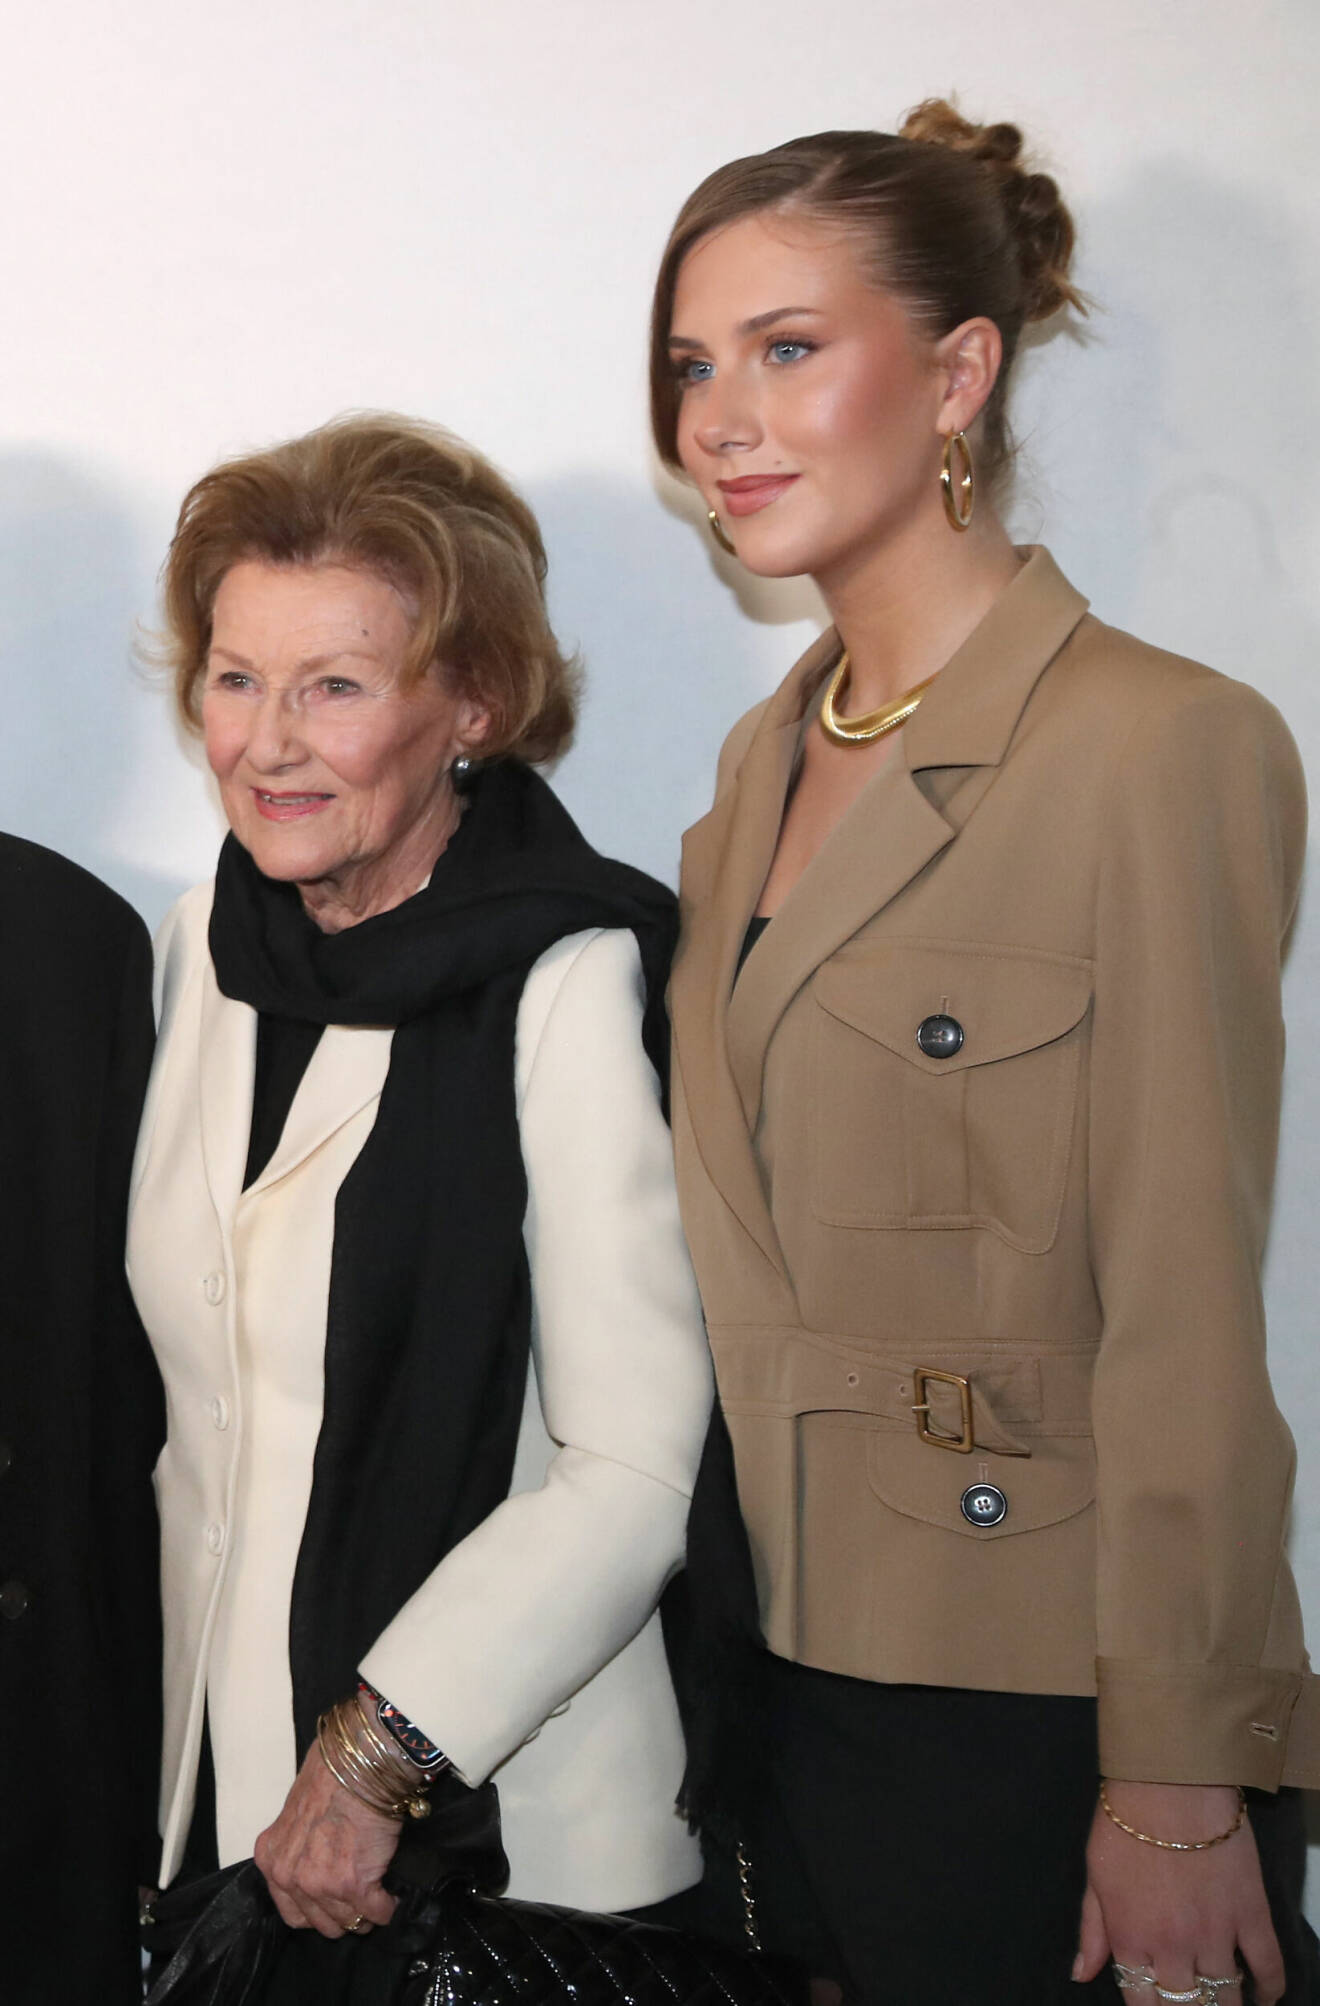 Drottning Sonja och Leah Behn